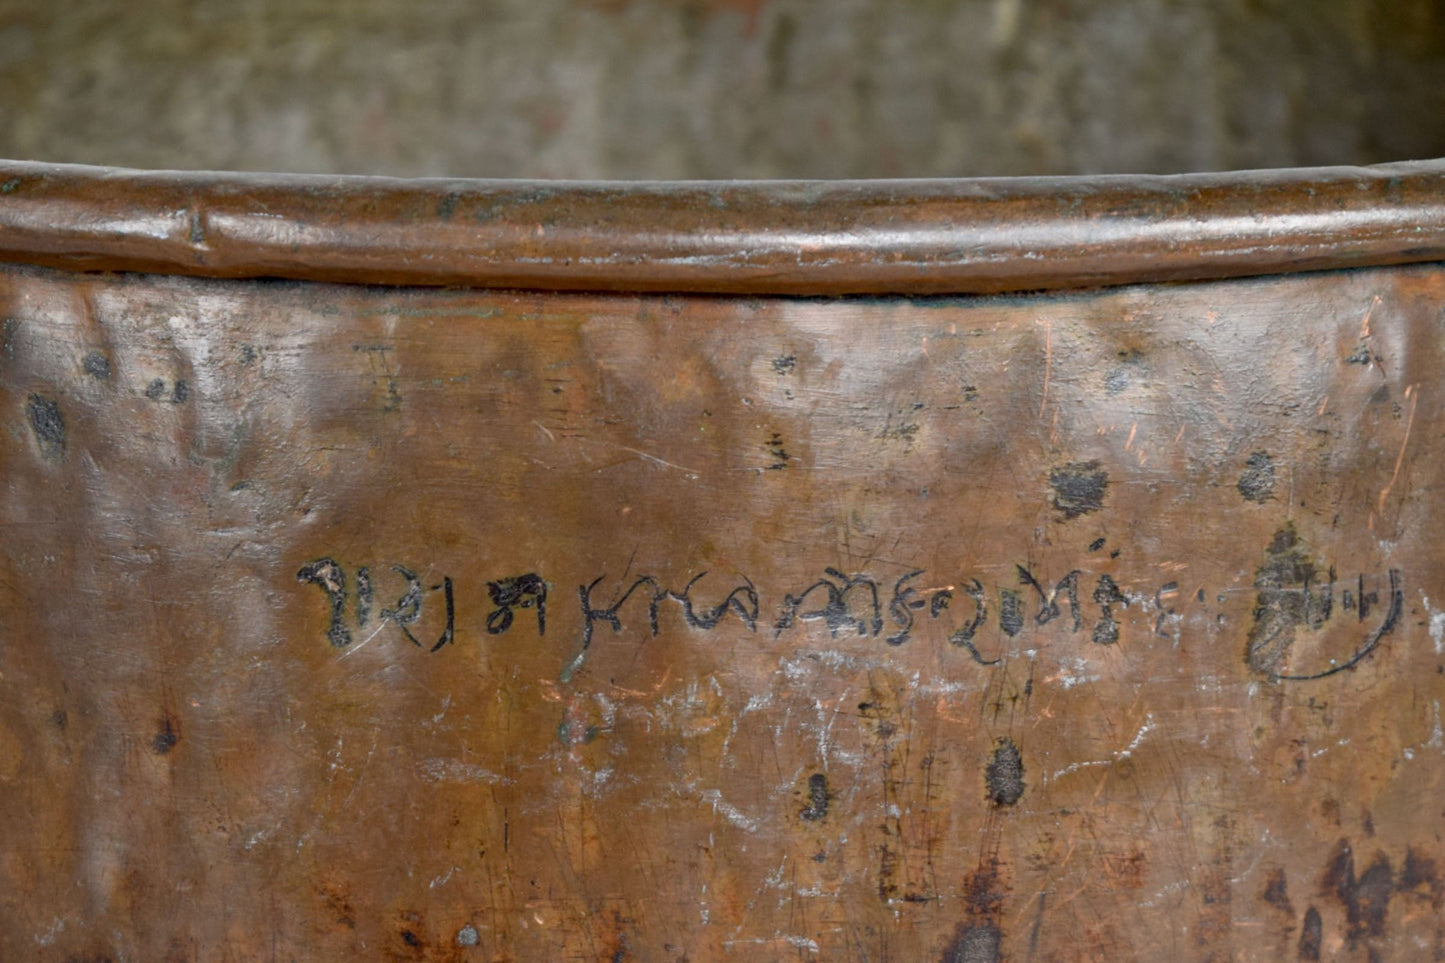 Medium copper water pot